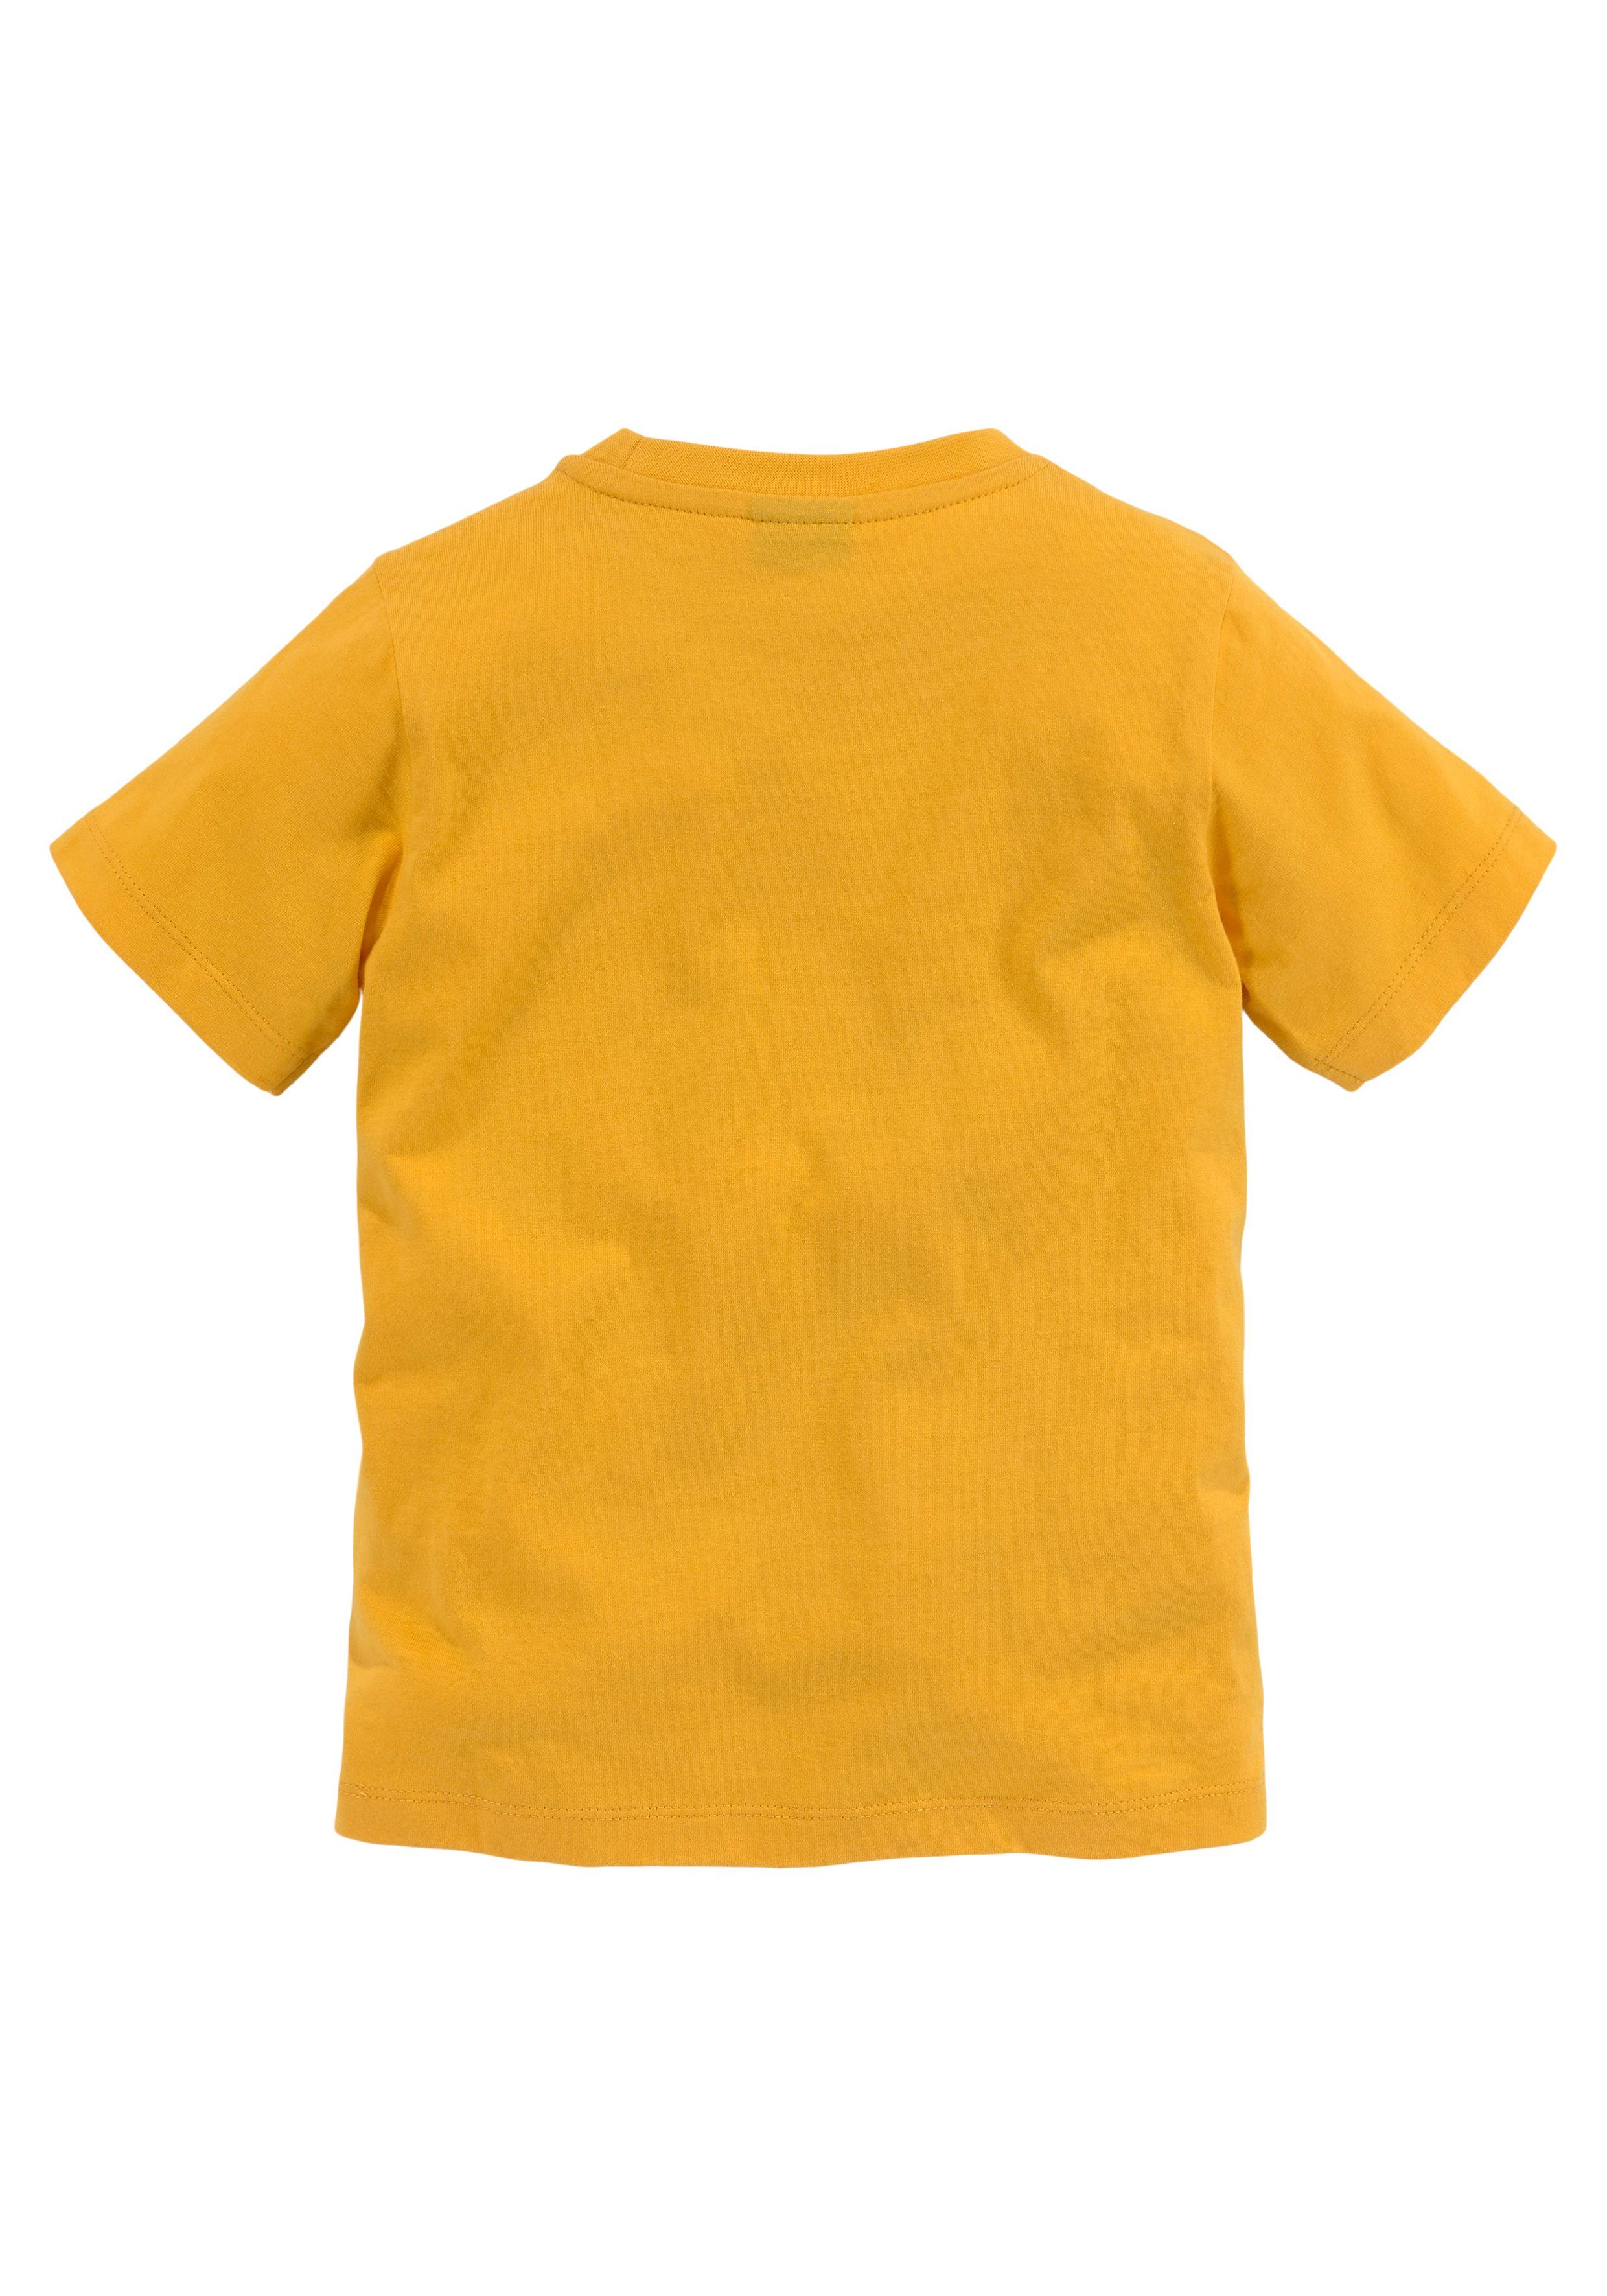 LITTLE TIGER T-Shirt KIDSWORLD